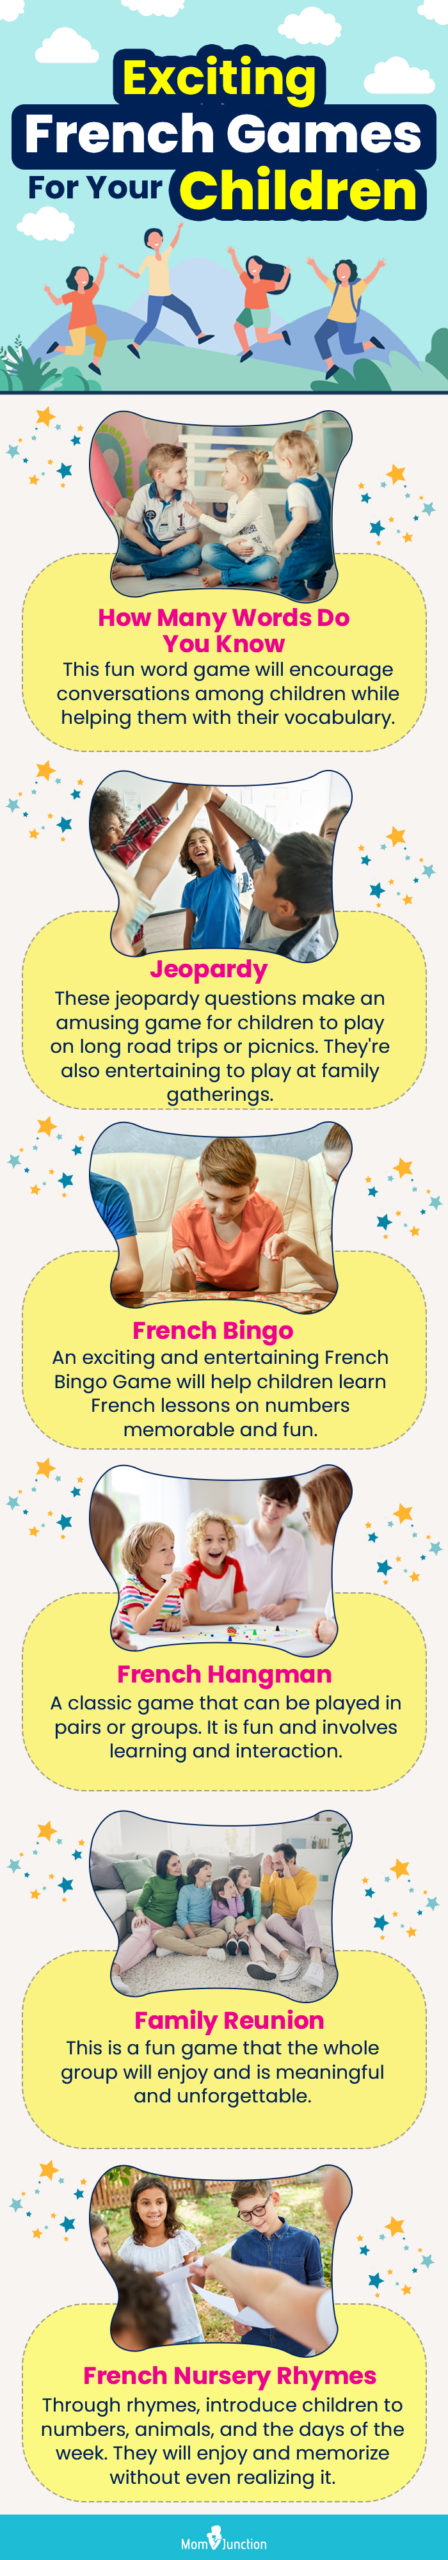 为您的孩子准备的令人兴奋的法语游戏(信息图)